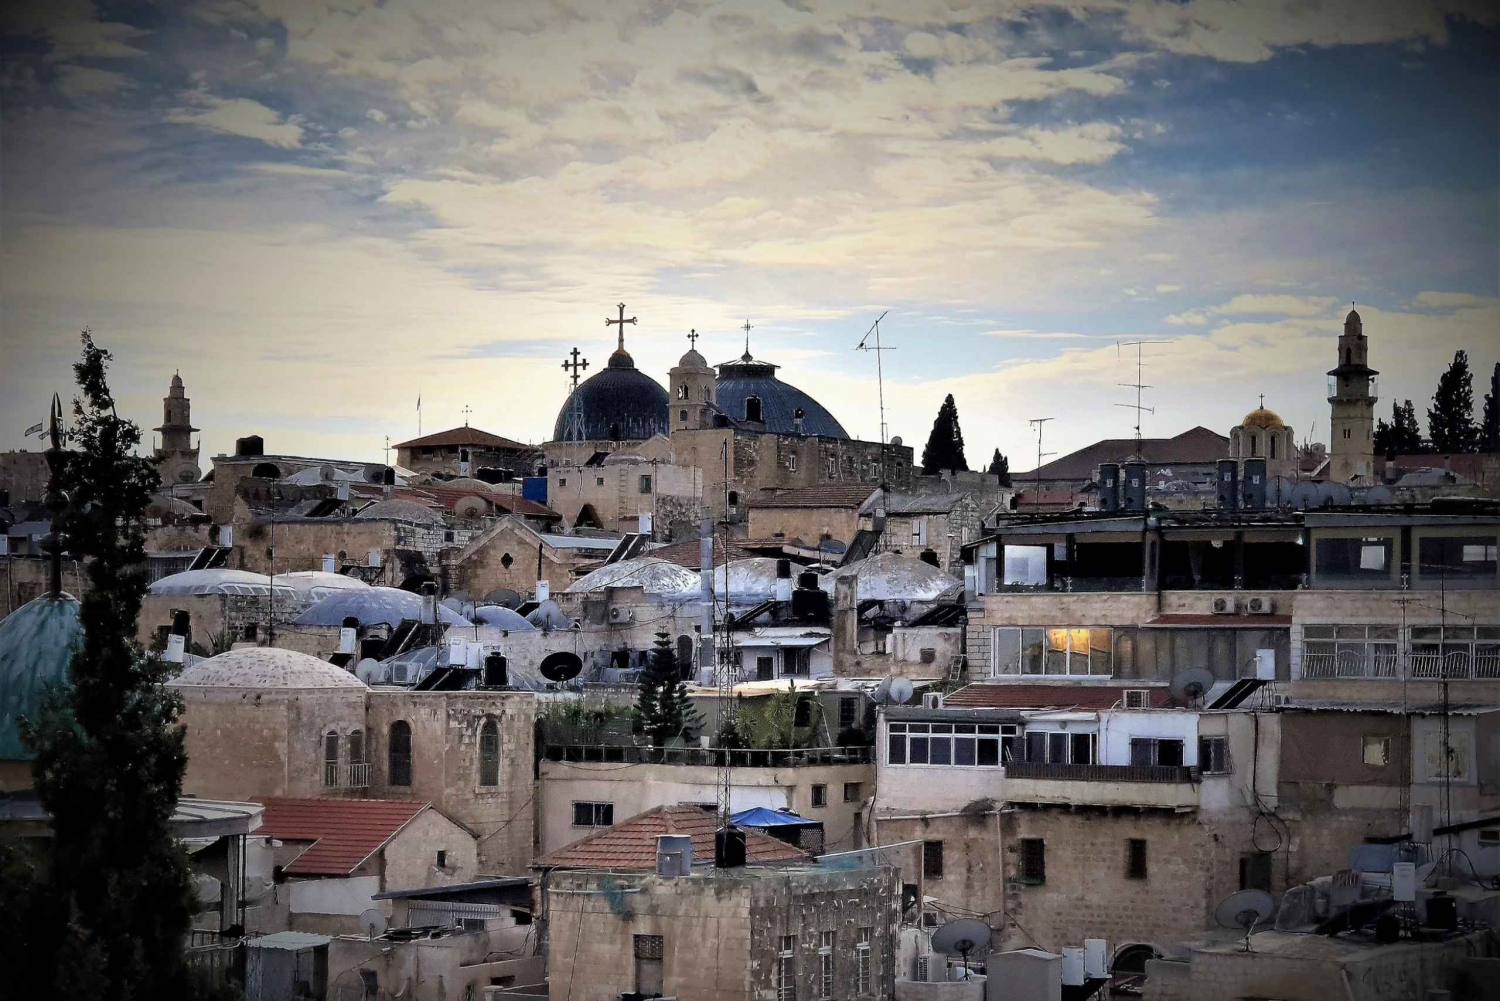 Jeruzalem: privétour op de werelderfgoedlijst met hotelovername